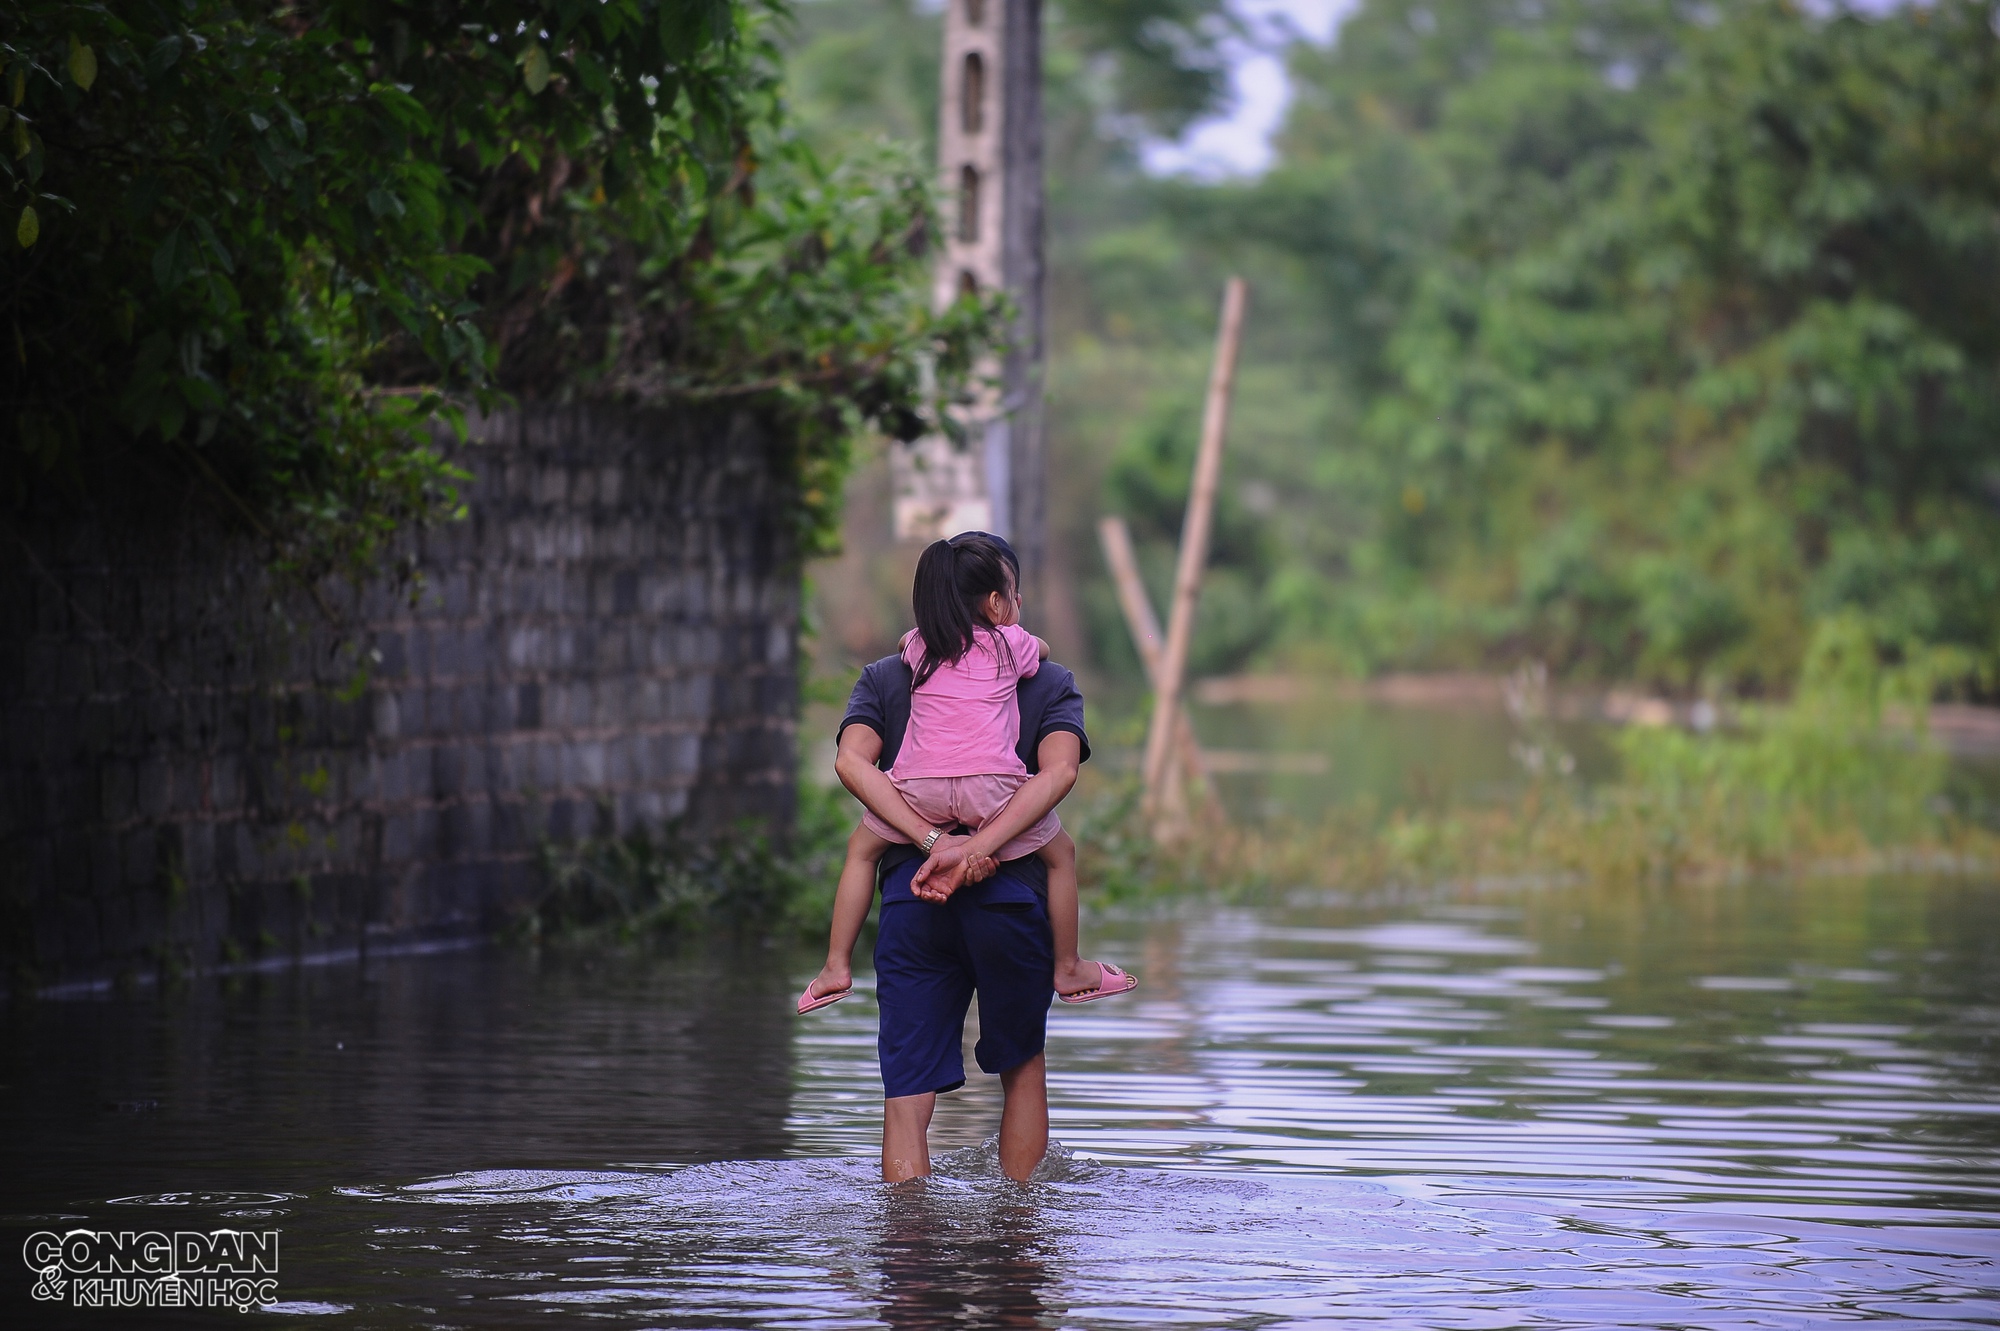 Hà Nội: Nhiều nơi ở huyện Chương Mỹ vẫn ngập nước, người dân chịu nhiều thiệt hại do lũ - Ảnh 1.